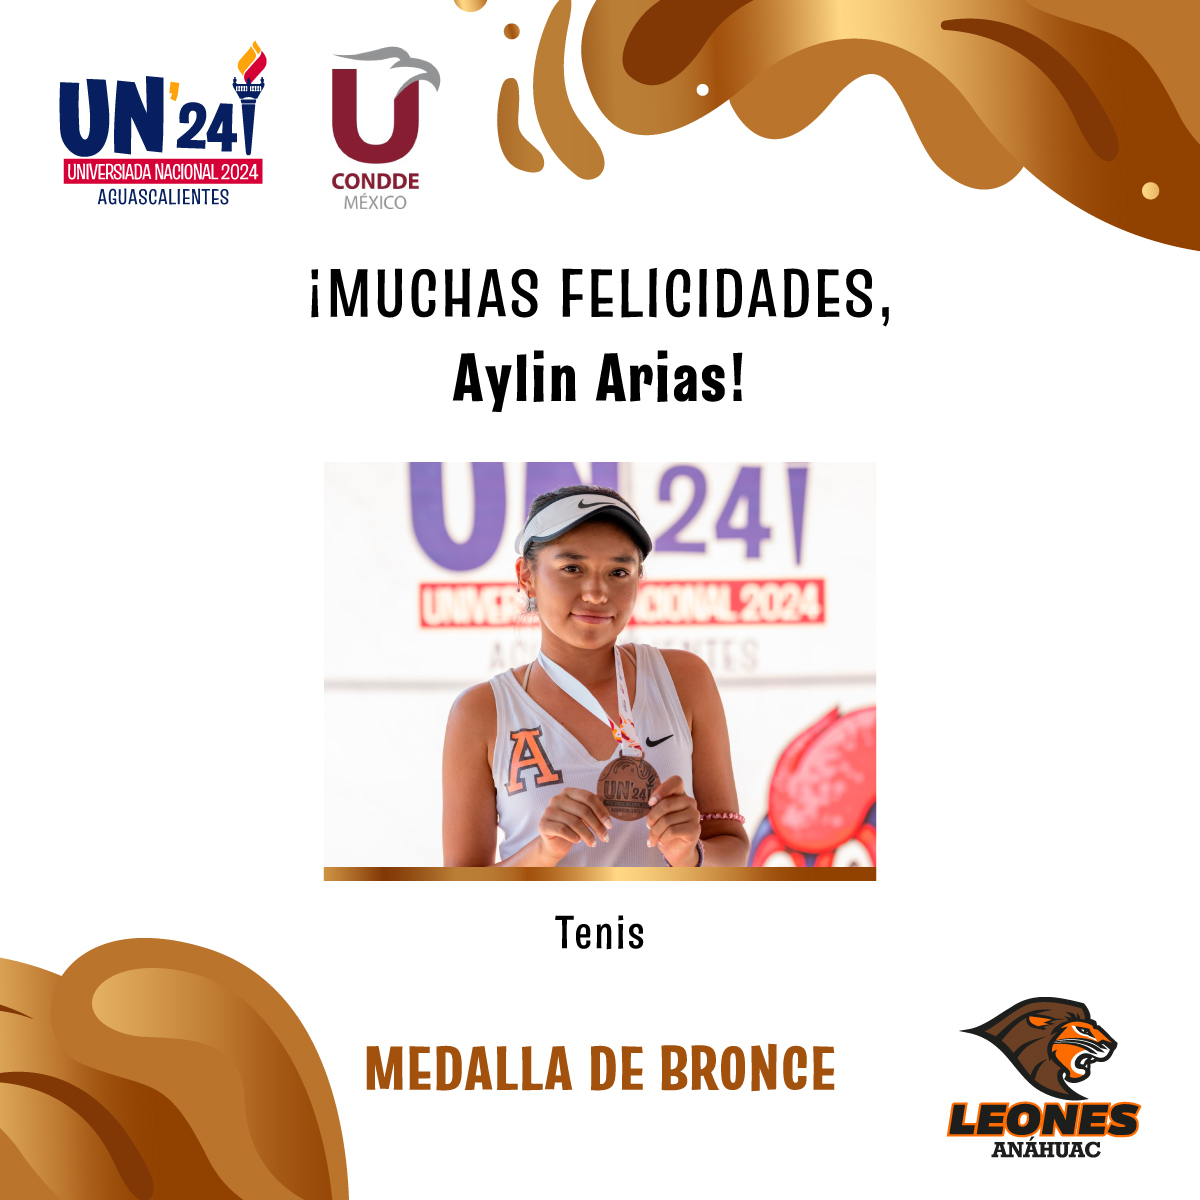 #VamosLeones ¡Medalla de plata en Tenis! 🎾 Felicitamos mucho a Aylin Arias, quien gracias a su destreza y habilidad, ganó la medalla de bronce en Tenis en la #UniversiadaNacional2024 ¡Muchas felicidades! 🦁💪🏼